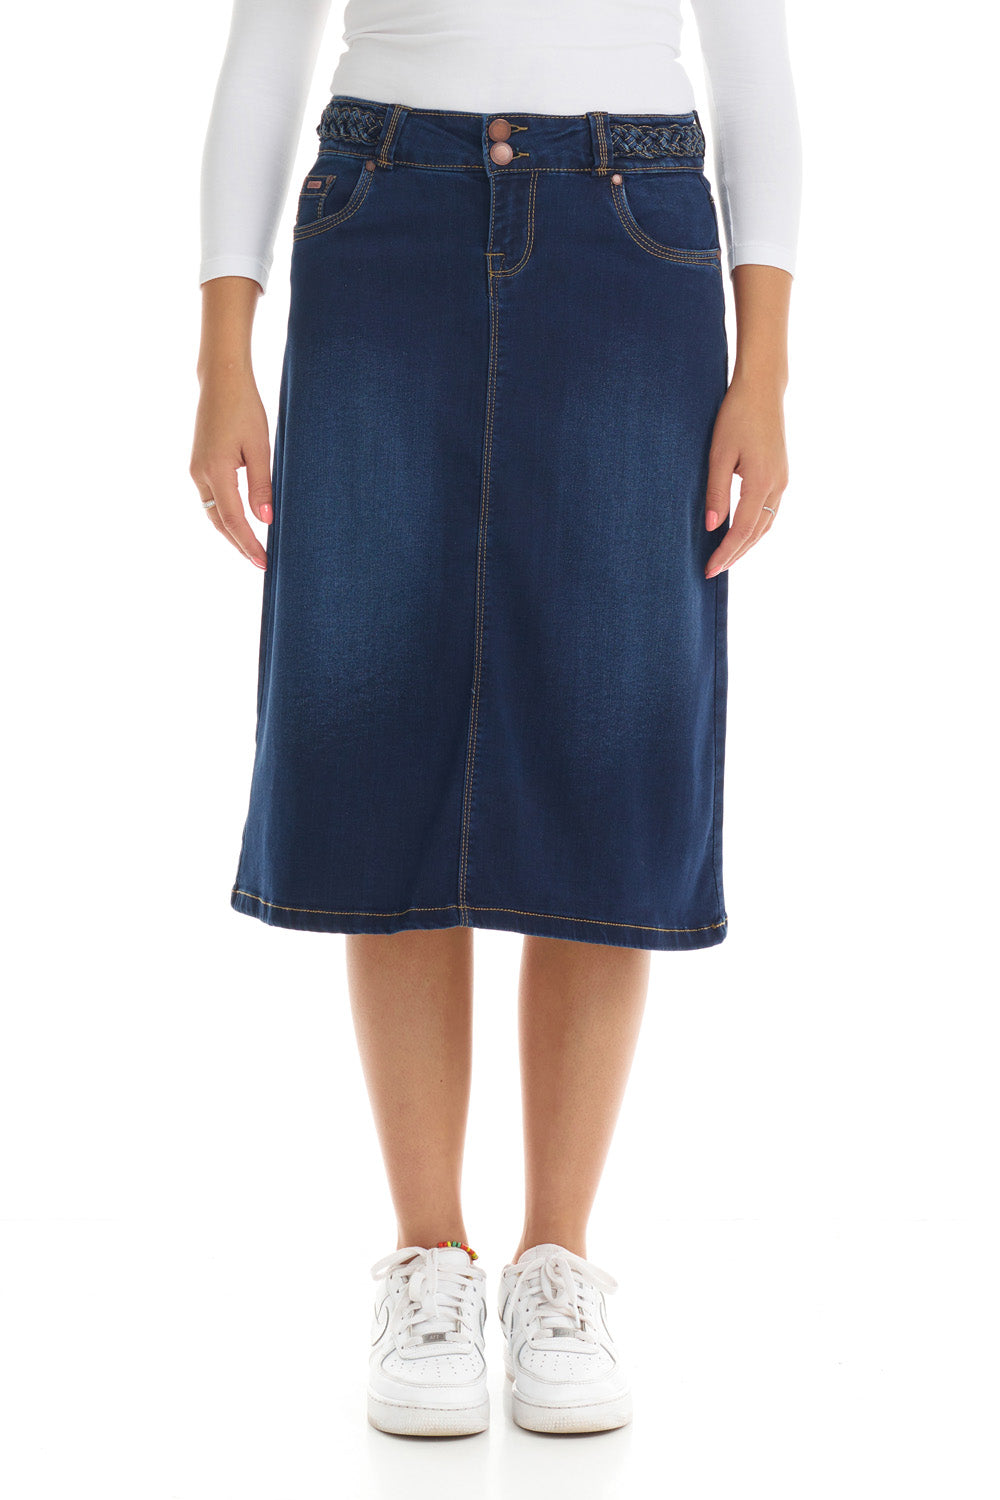 blue modest 2-button and zipper closure A-line flary below the knee jean skirt 